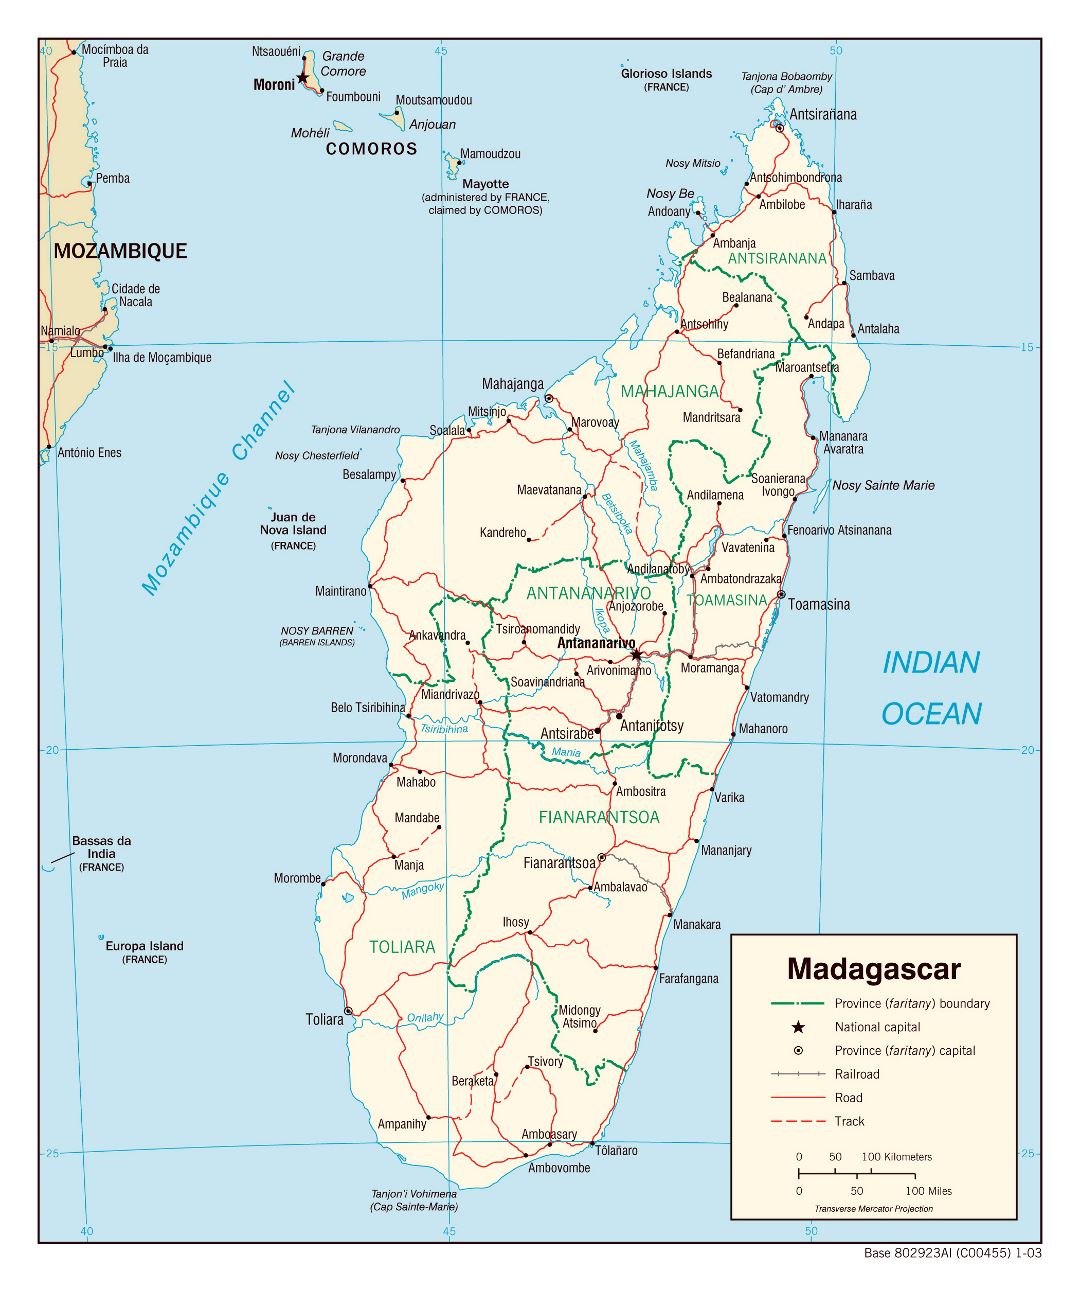 Большая детальная политическая и административная карта Мадагаскара с дорогами, железными дорогами и крупными городами - 2003